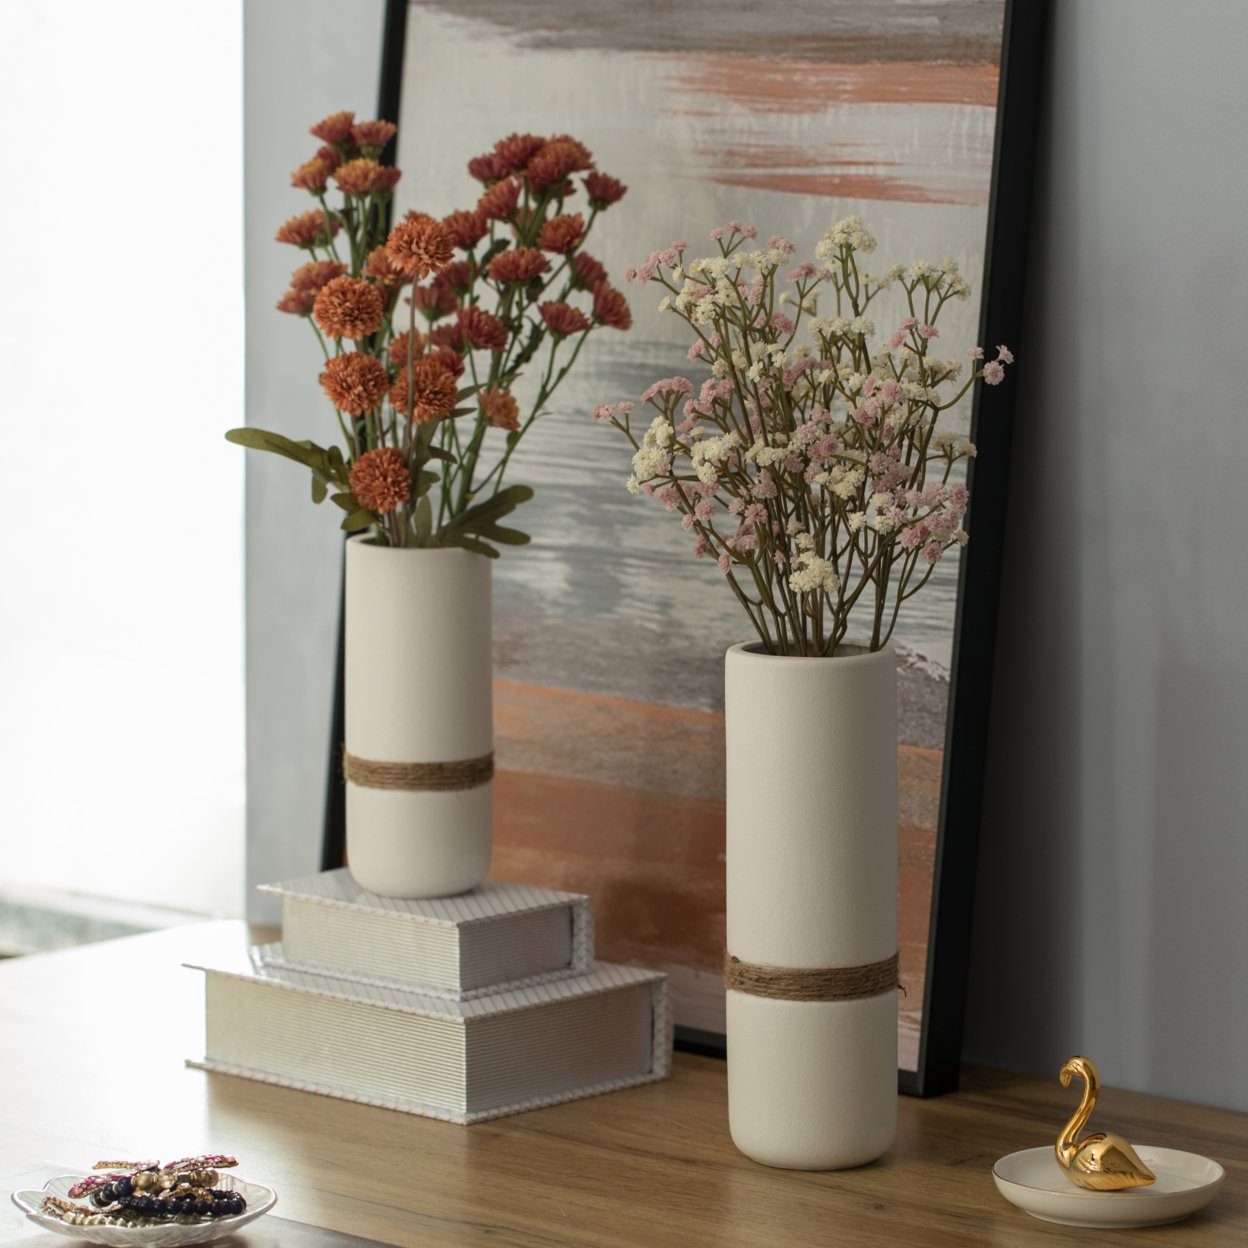 Decorative Modern Ceramic Cylinder Shape Table Vase Flower Holder With Rope - Set Of 2 Black